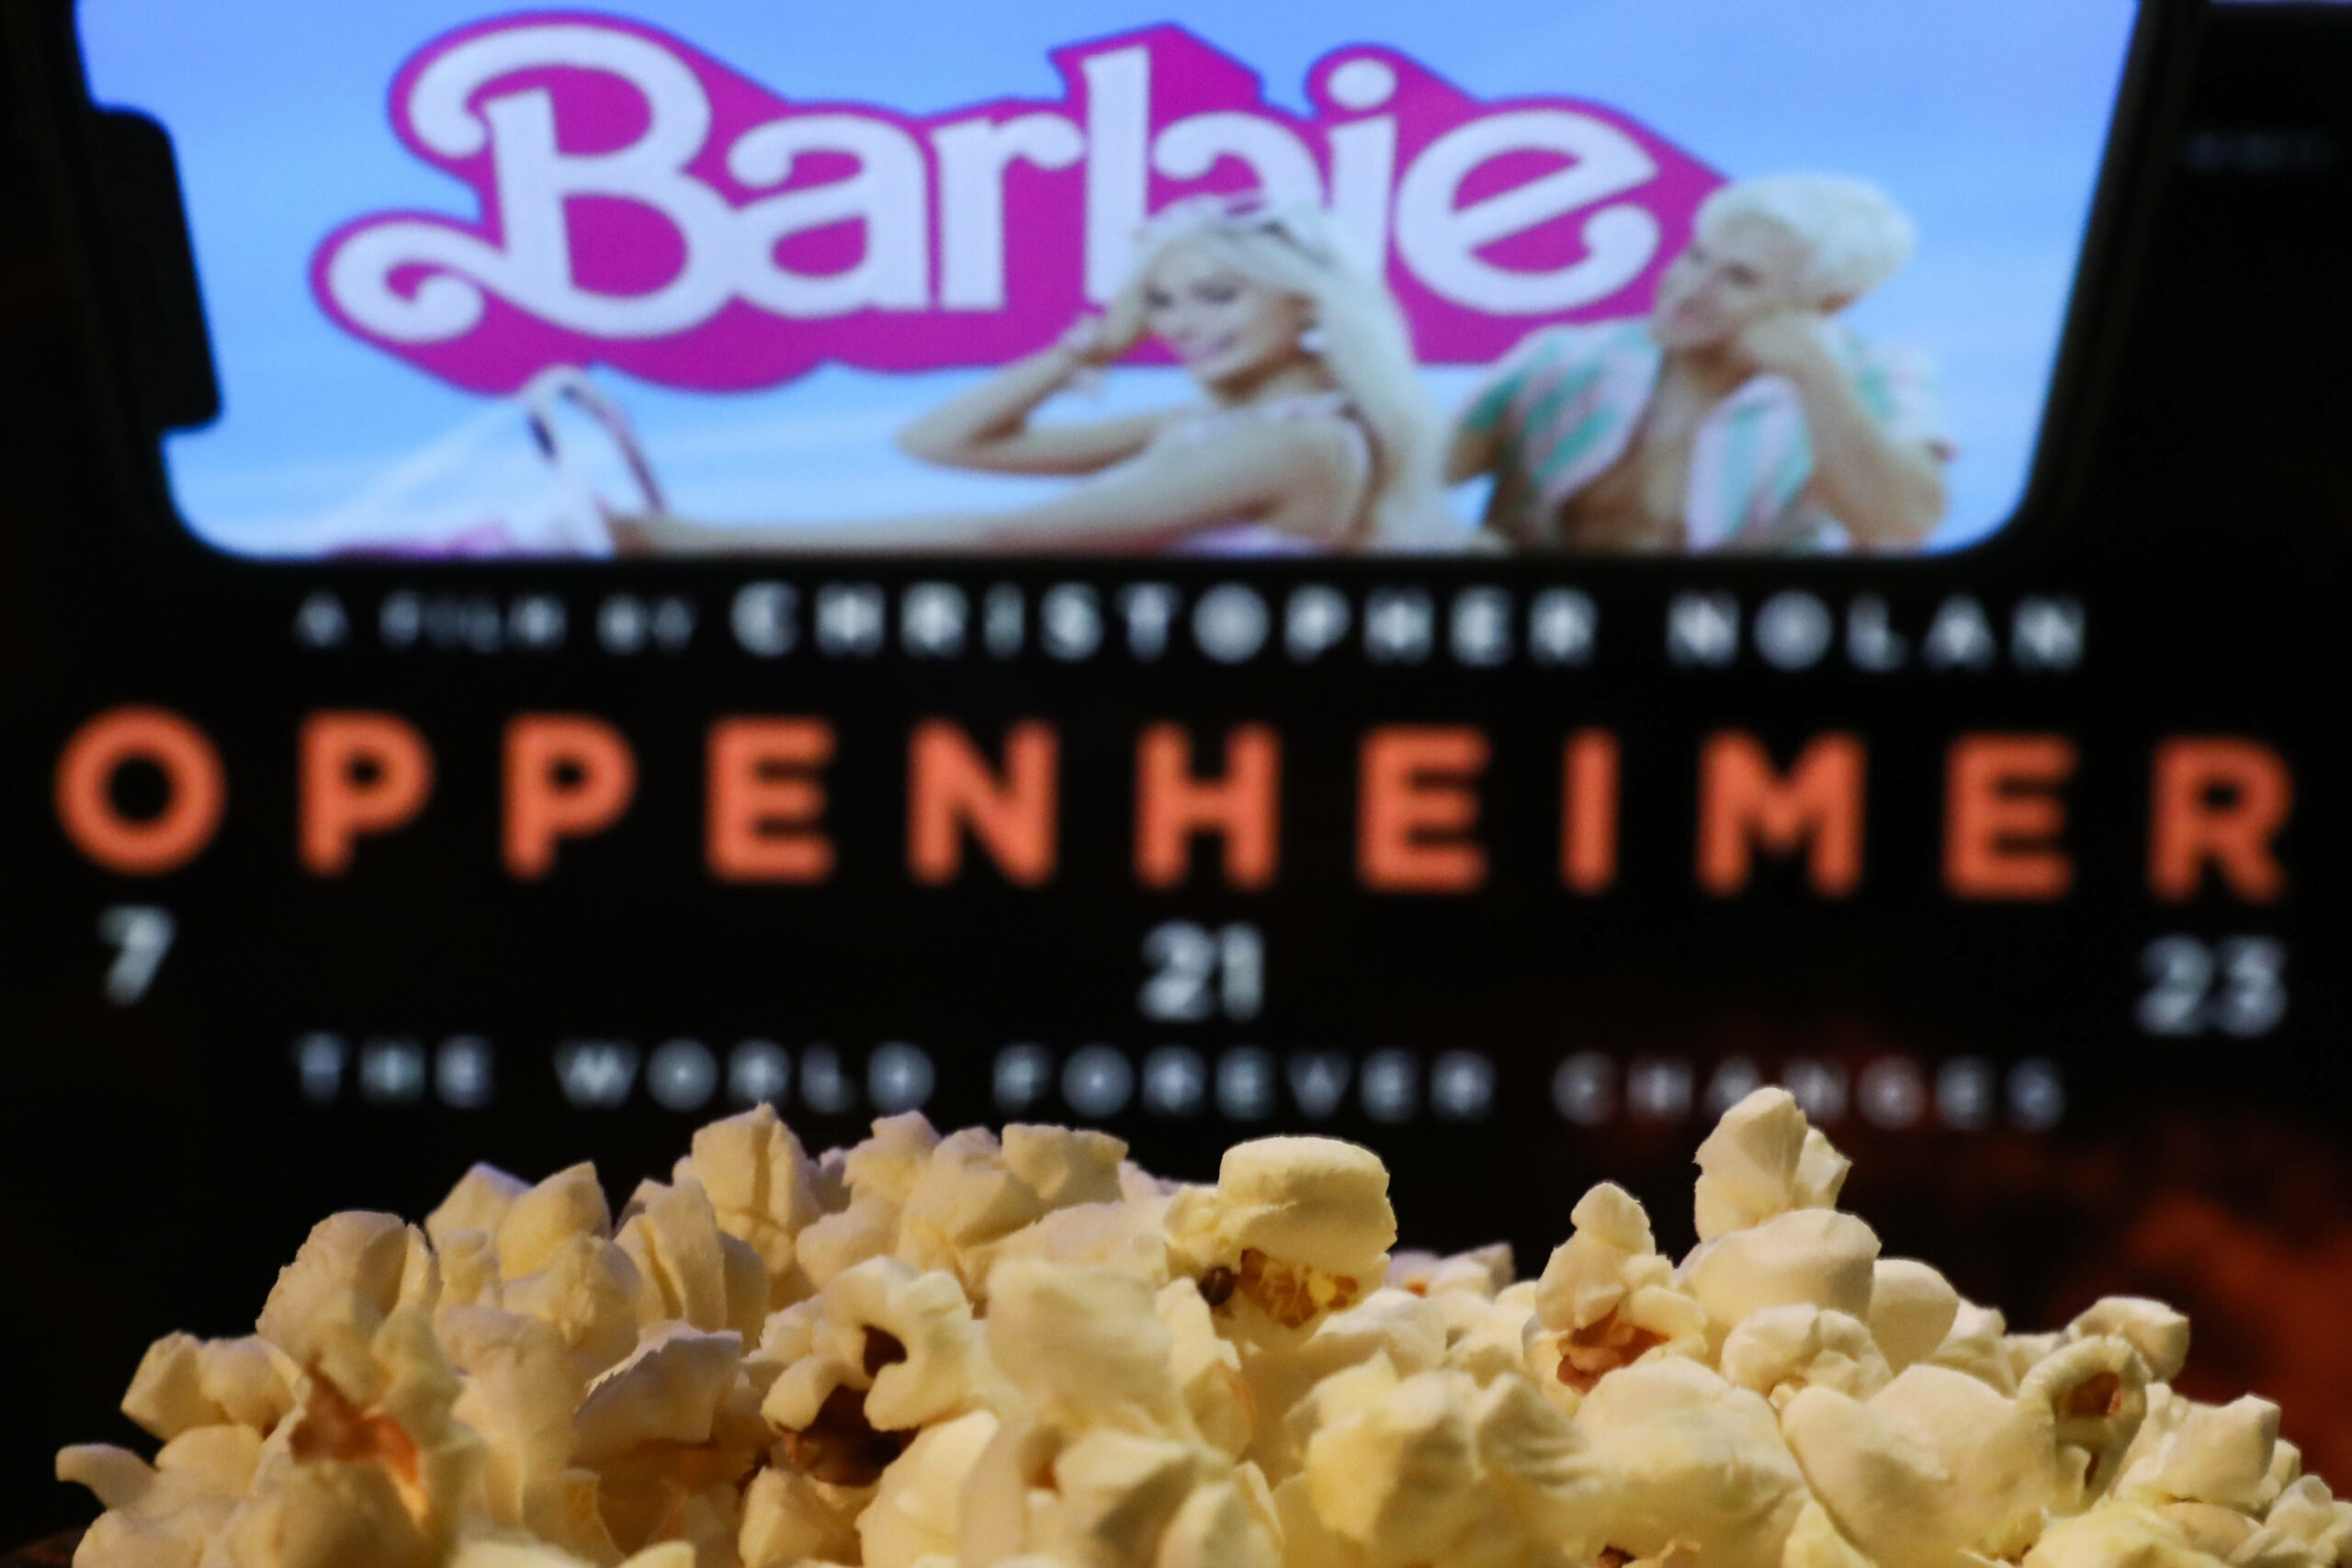 „Barbenheimer“ wurde das Duell der beiden Sommer-Kinohits „Barbie“ und „Oppenheimer“ getauft. Nun soll ein Mix der beiden Filme Realität werden.